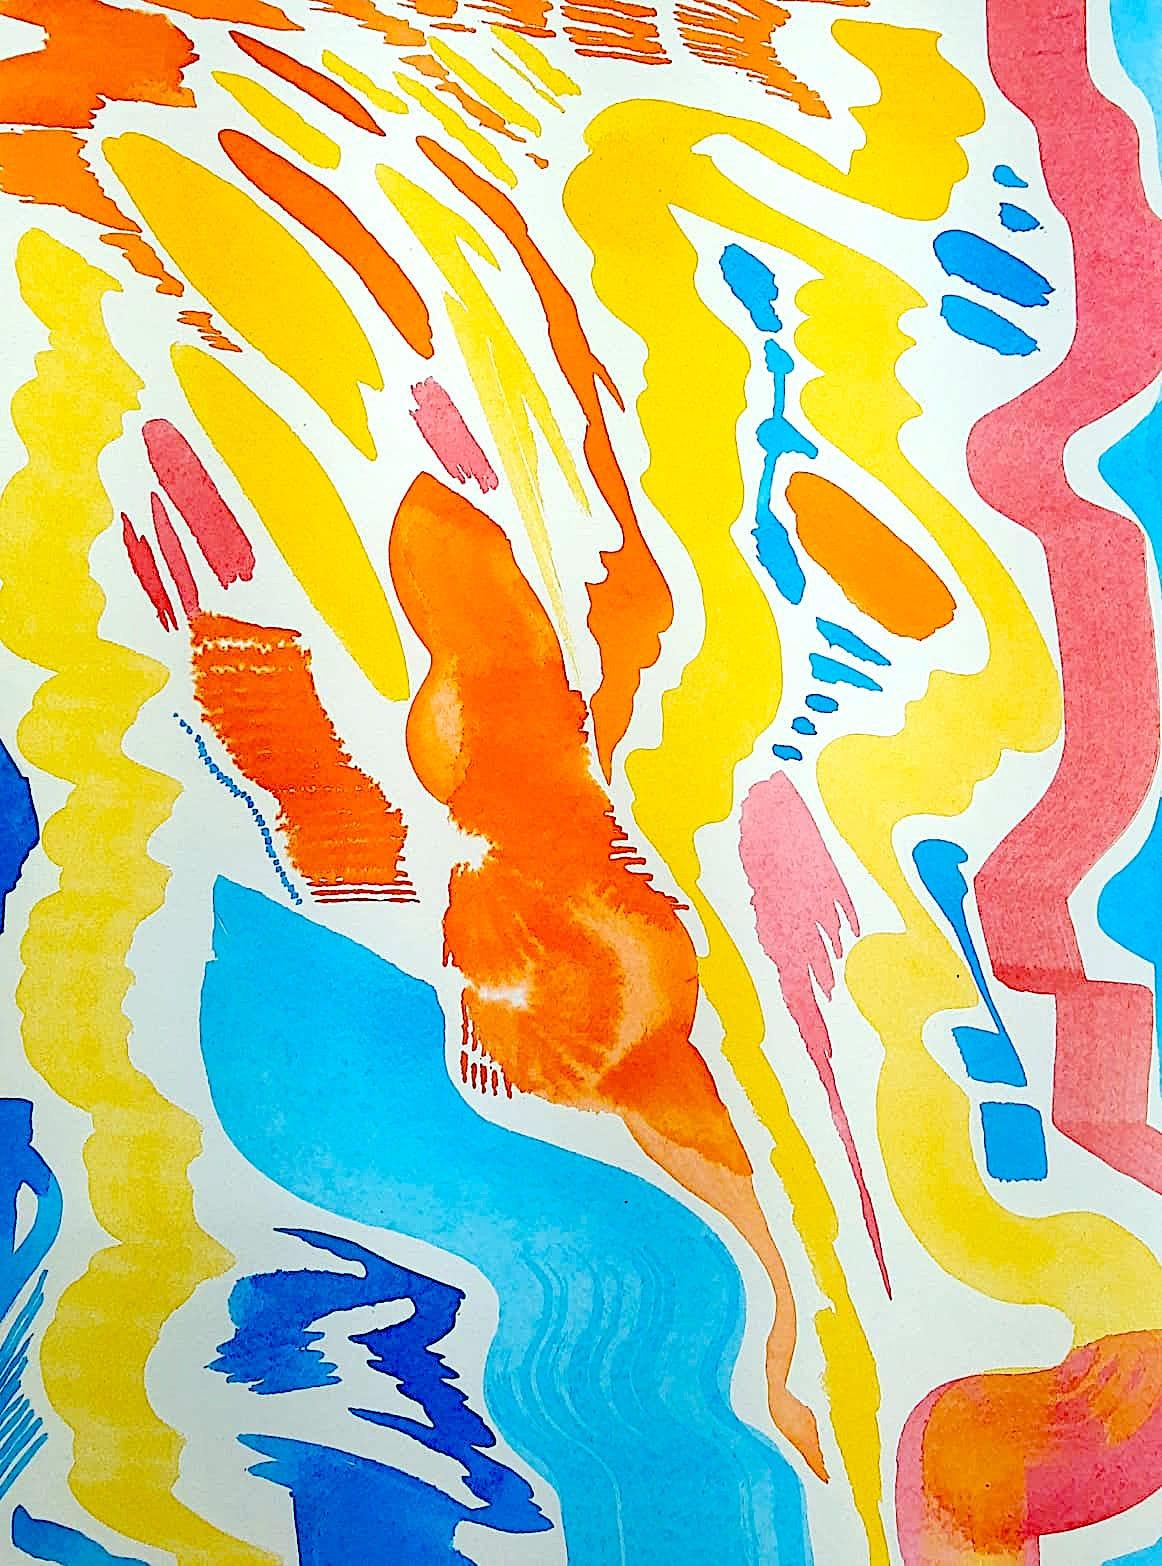 Alejandra España  Abstract Painting - "Las cosas no son lo que parecen" figurative, abstract, colorful ink painting